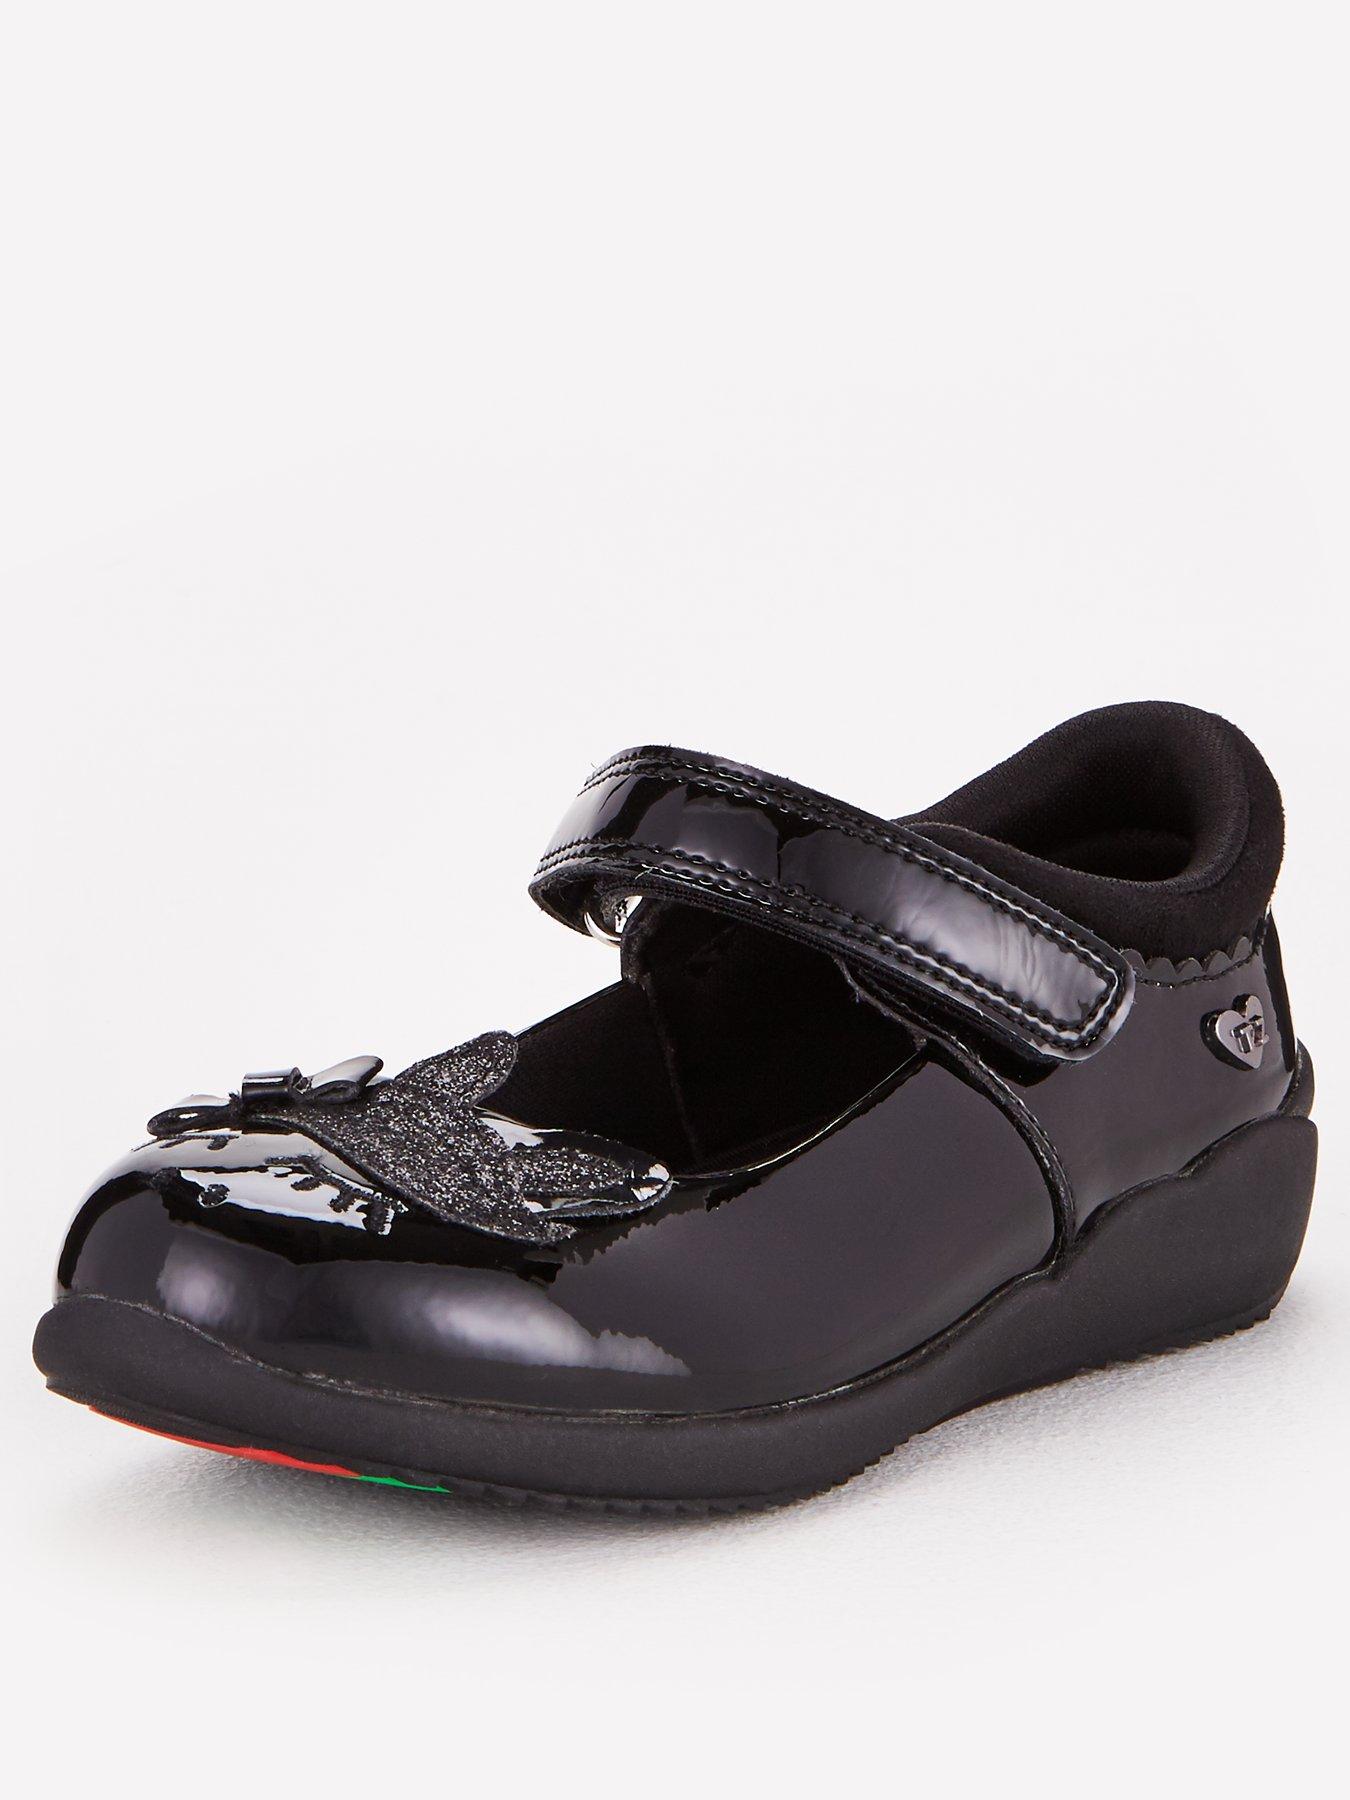 Strap | School shoes | Shoes \u0026 boots 